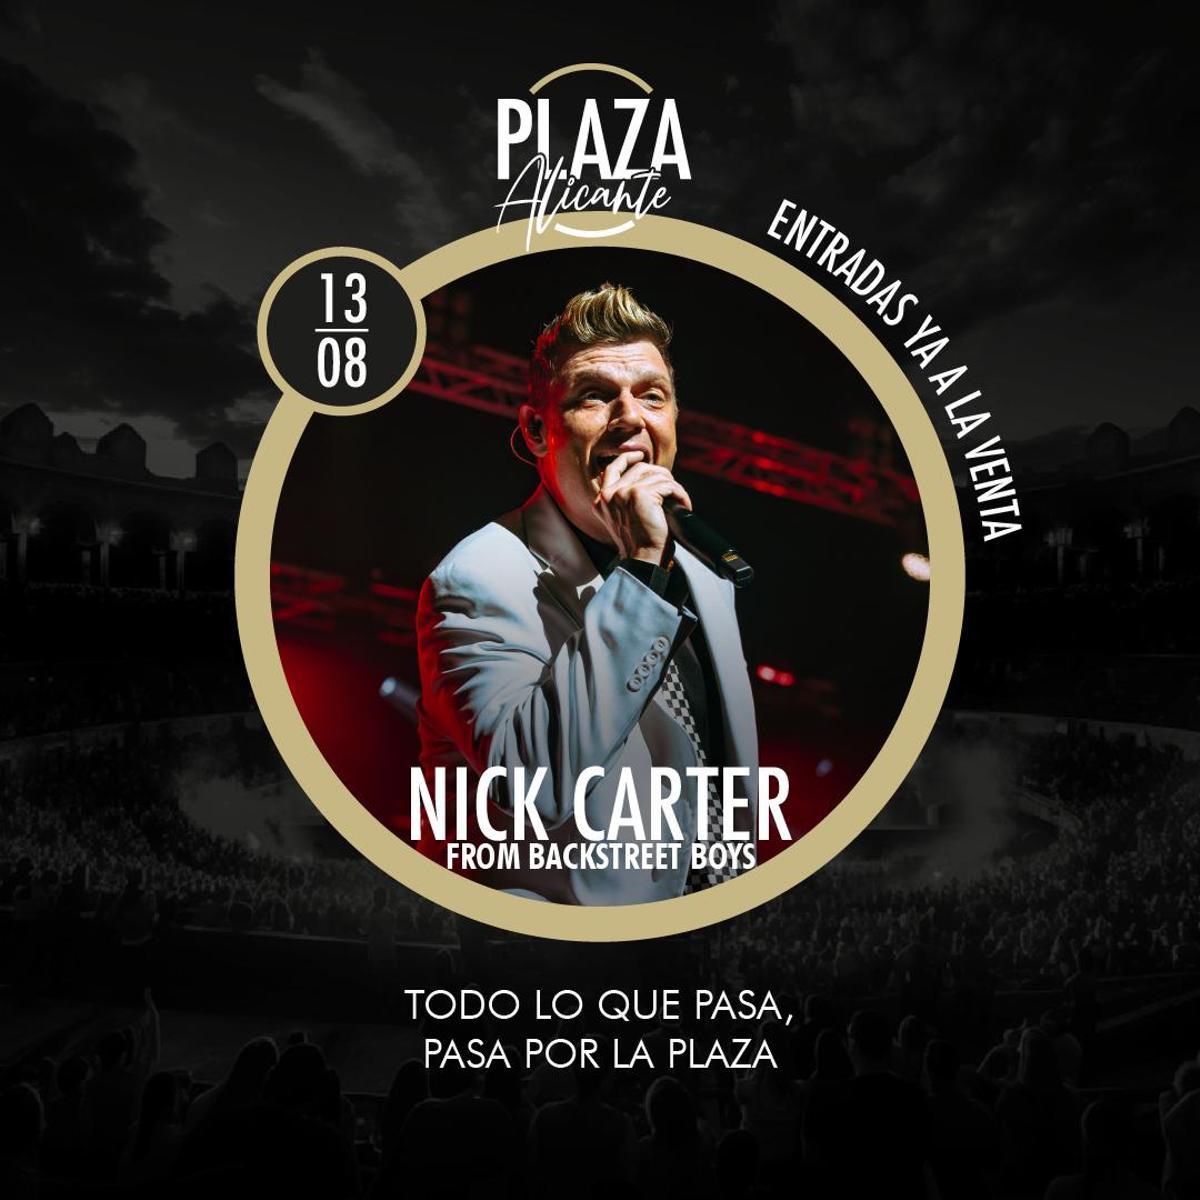 Cartel oficial que anuncia el concierto de Nick Carter en Alicante